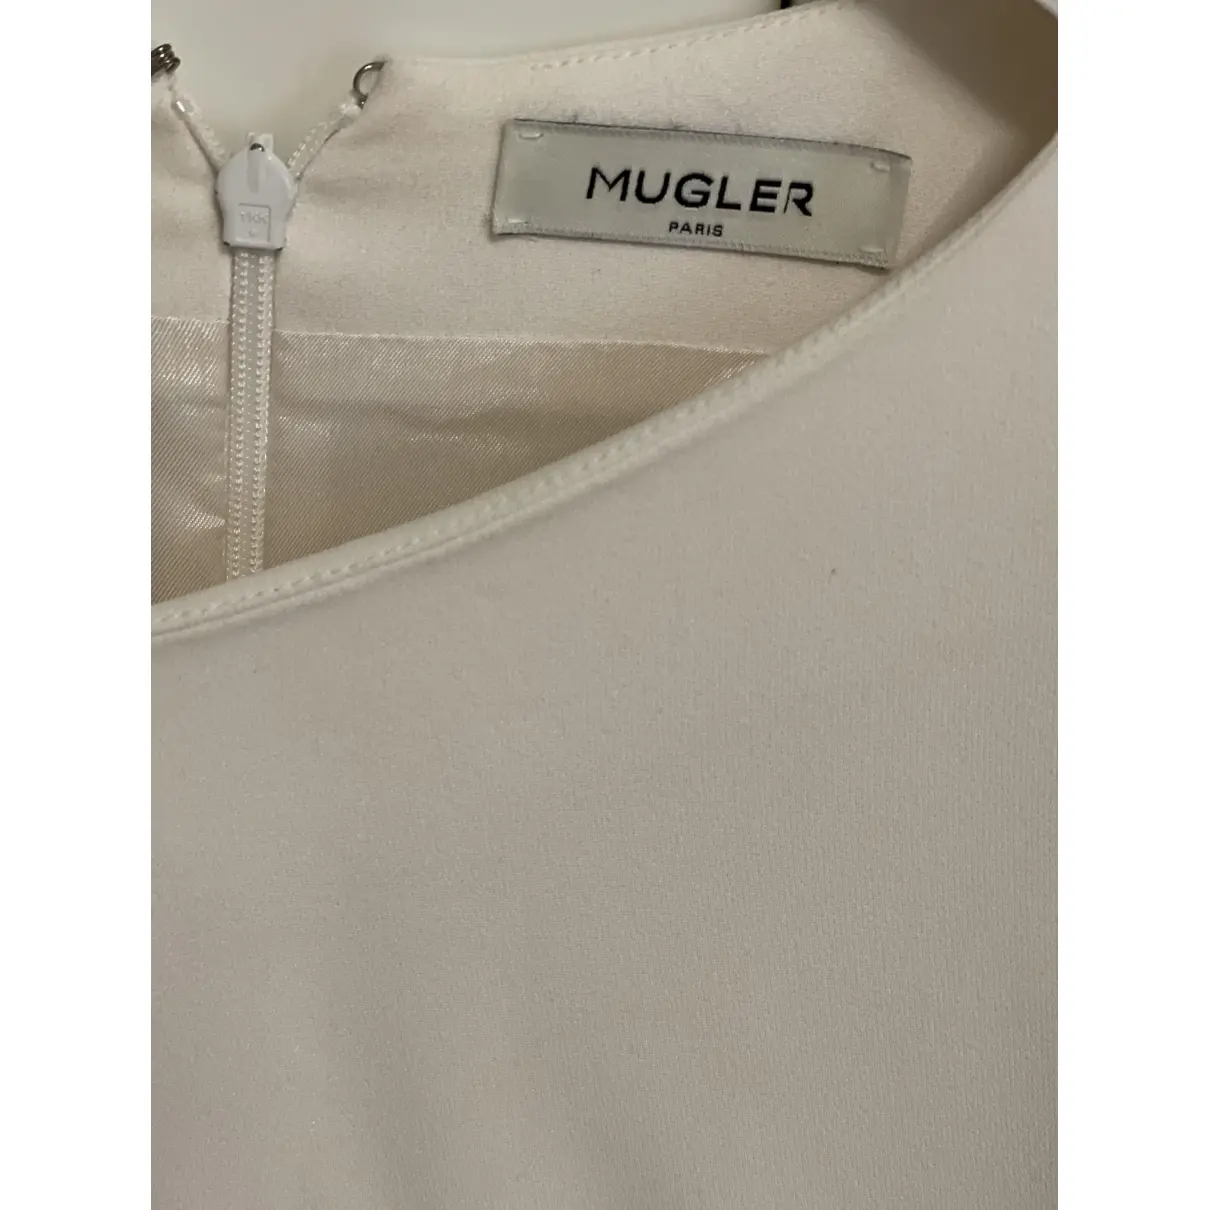 Buy Mugler Mini dress online